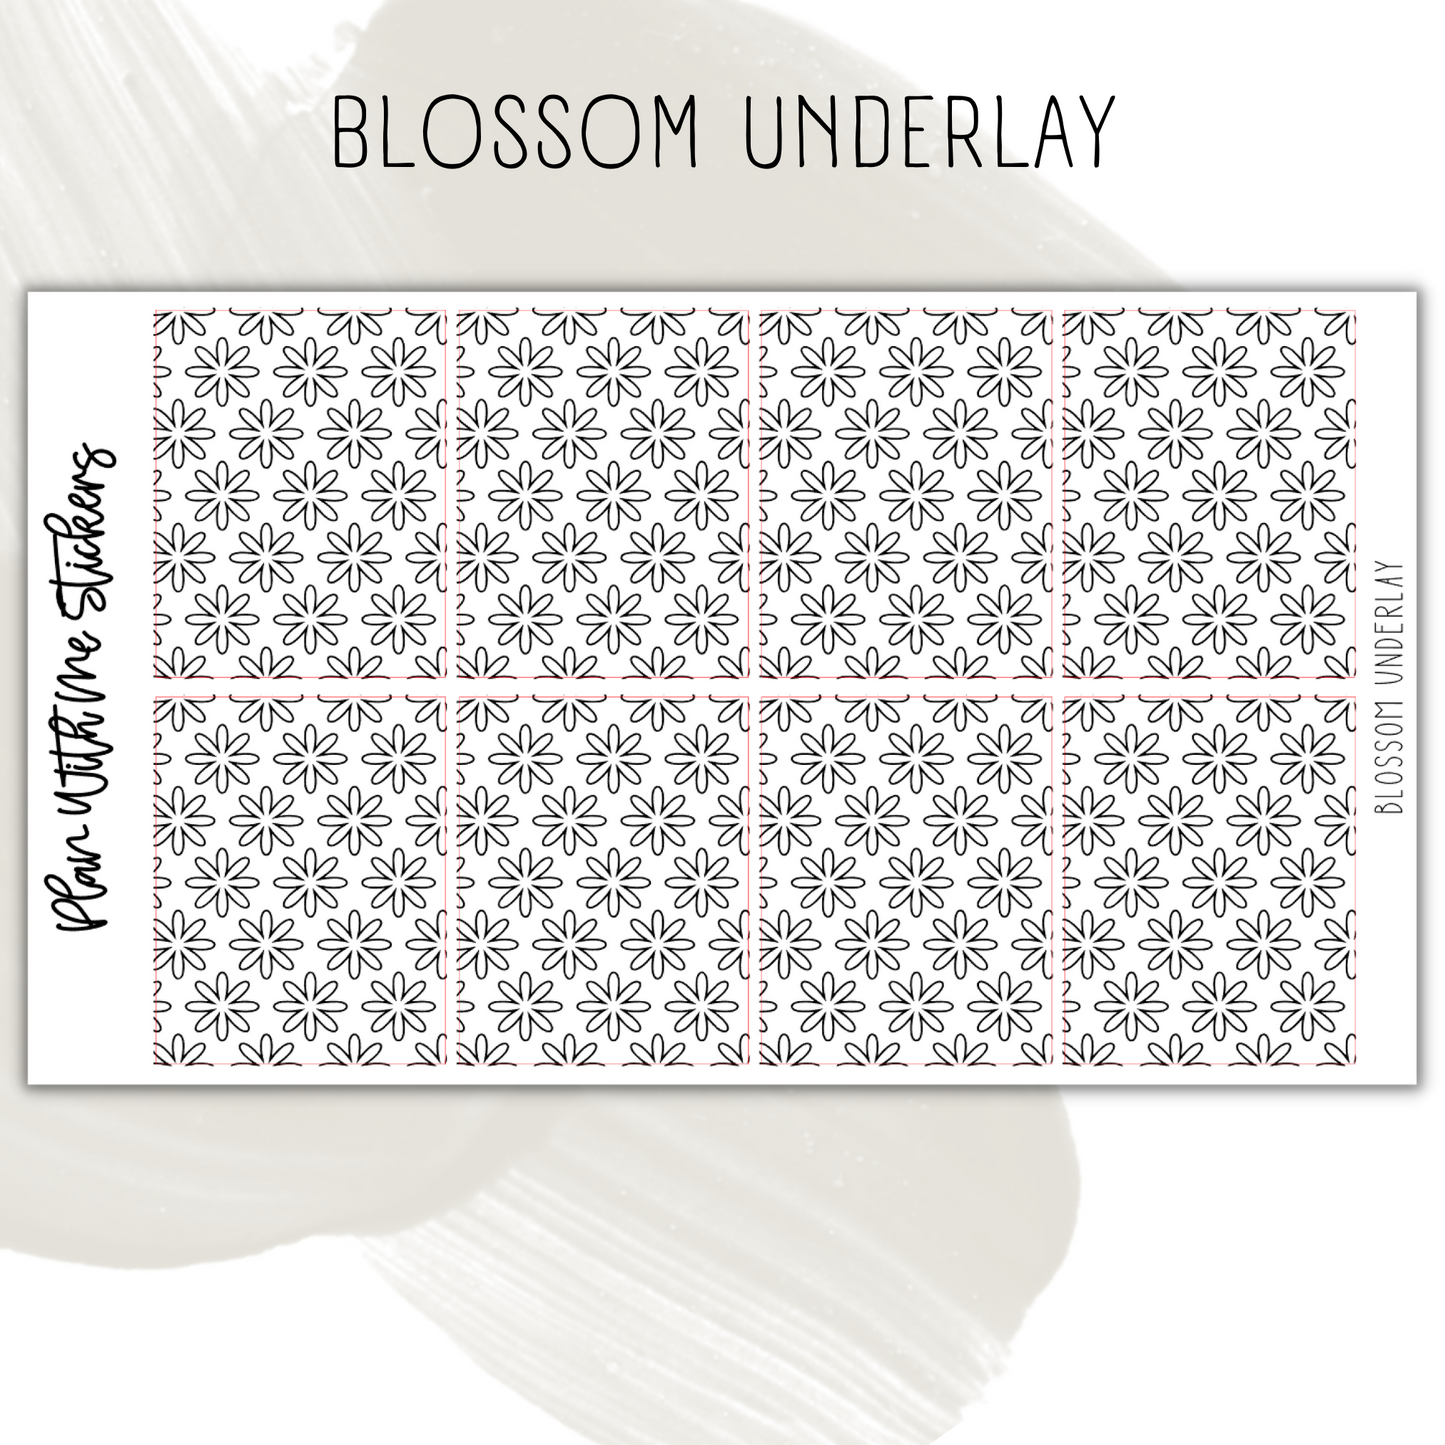 Blossom Underlay